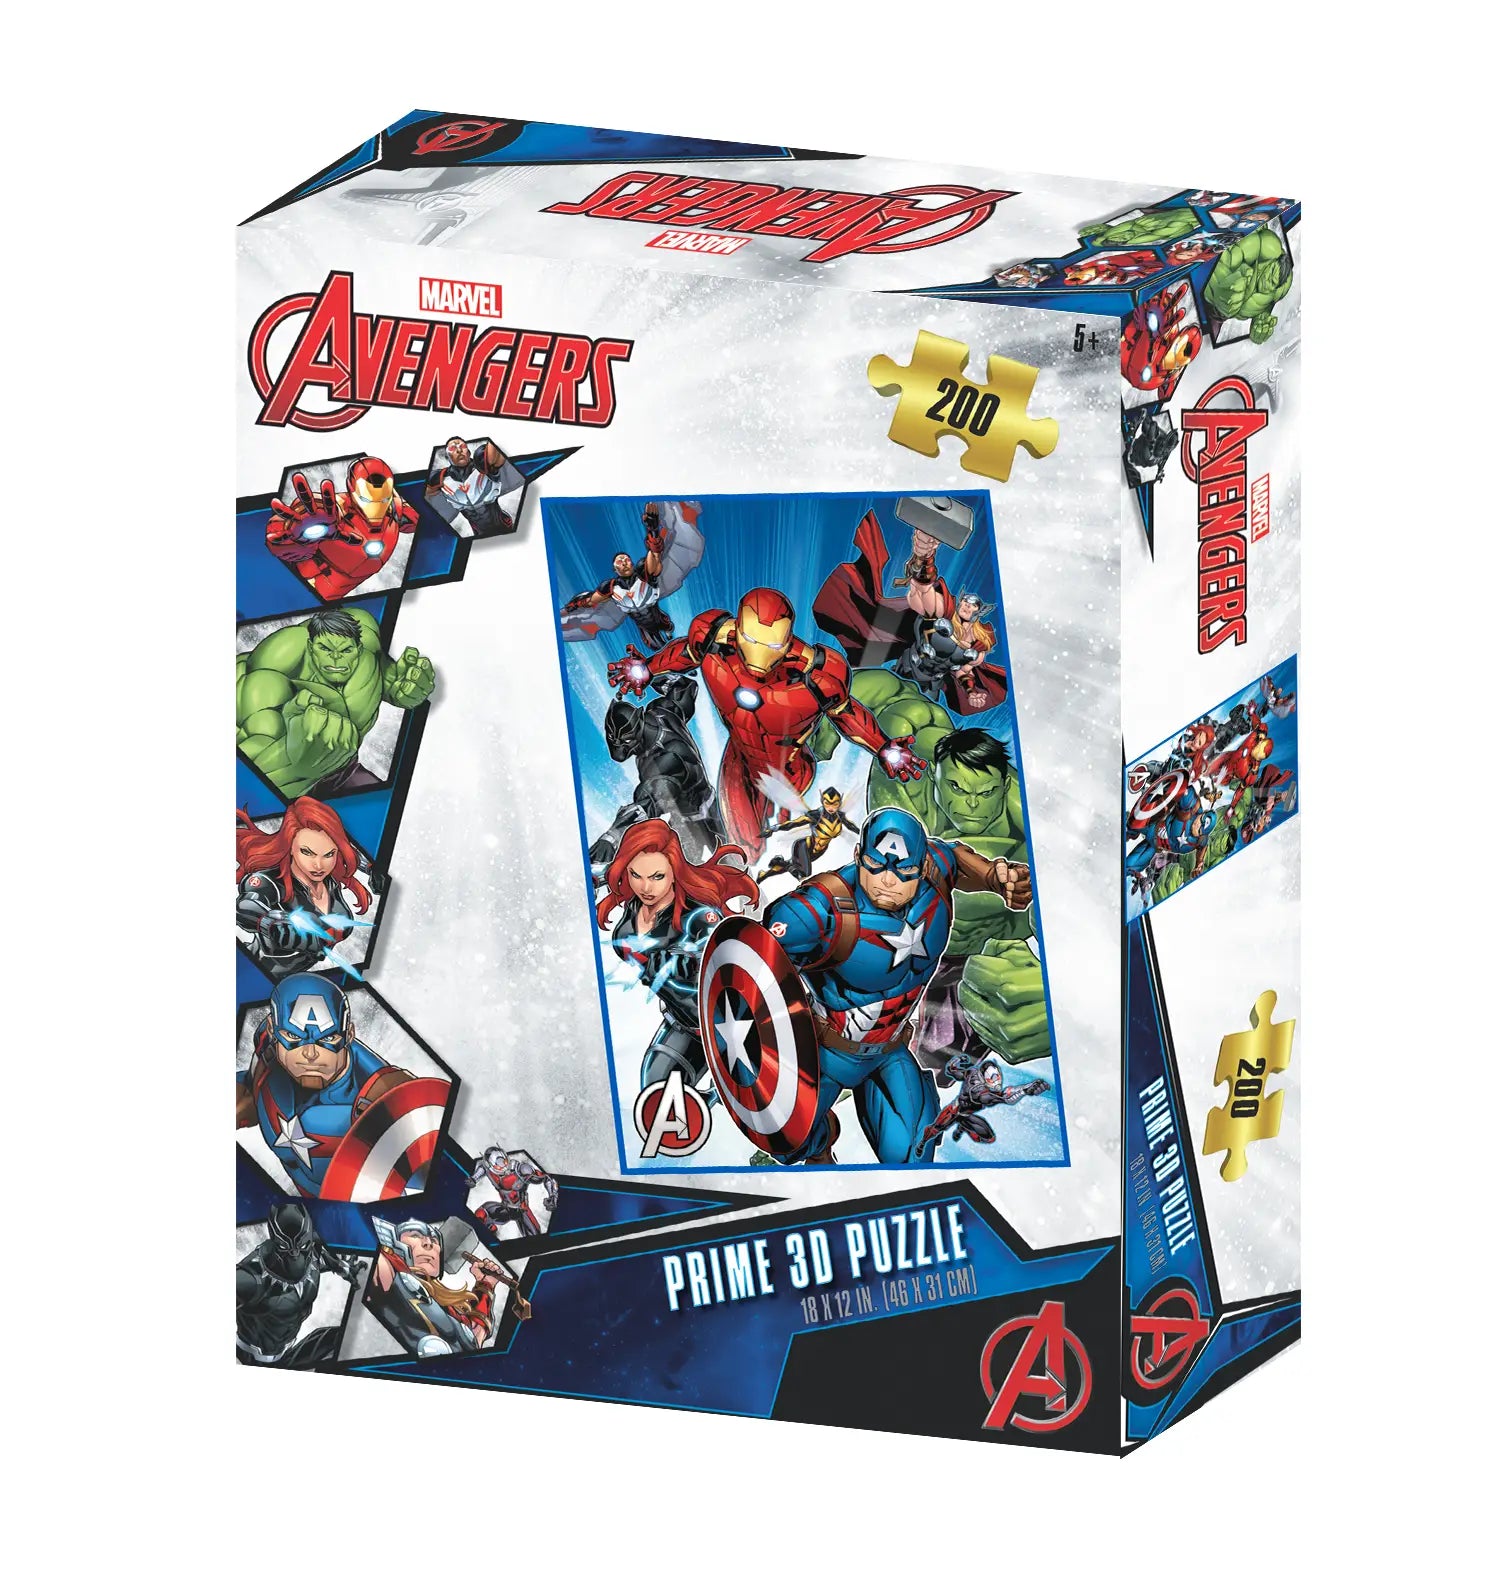 Prime 3D Marvel Avengers 200 Piece Puzzle